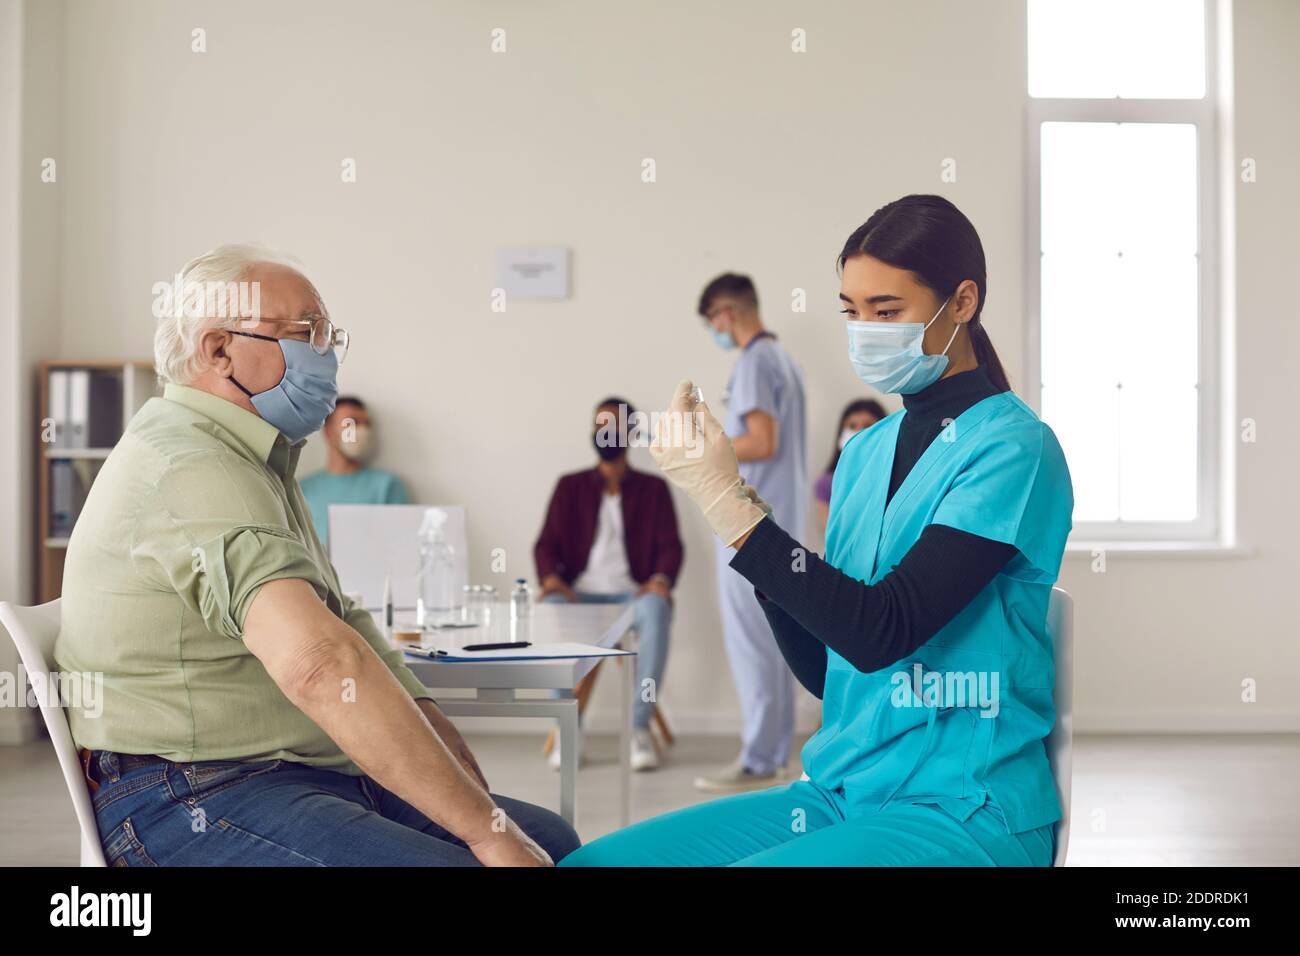 Paziente anziano in maschera in attesa di ricevere un vaccino contro l'influenza, la polmonite o Covid-19 Foto Stock